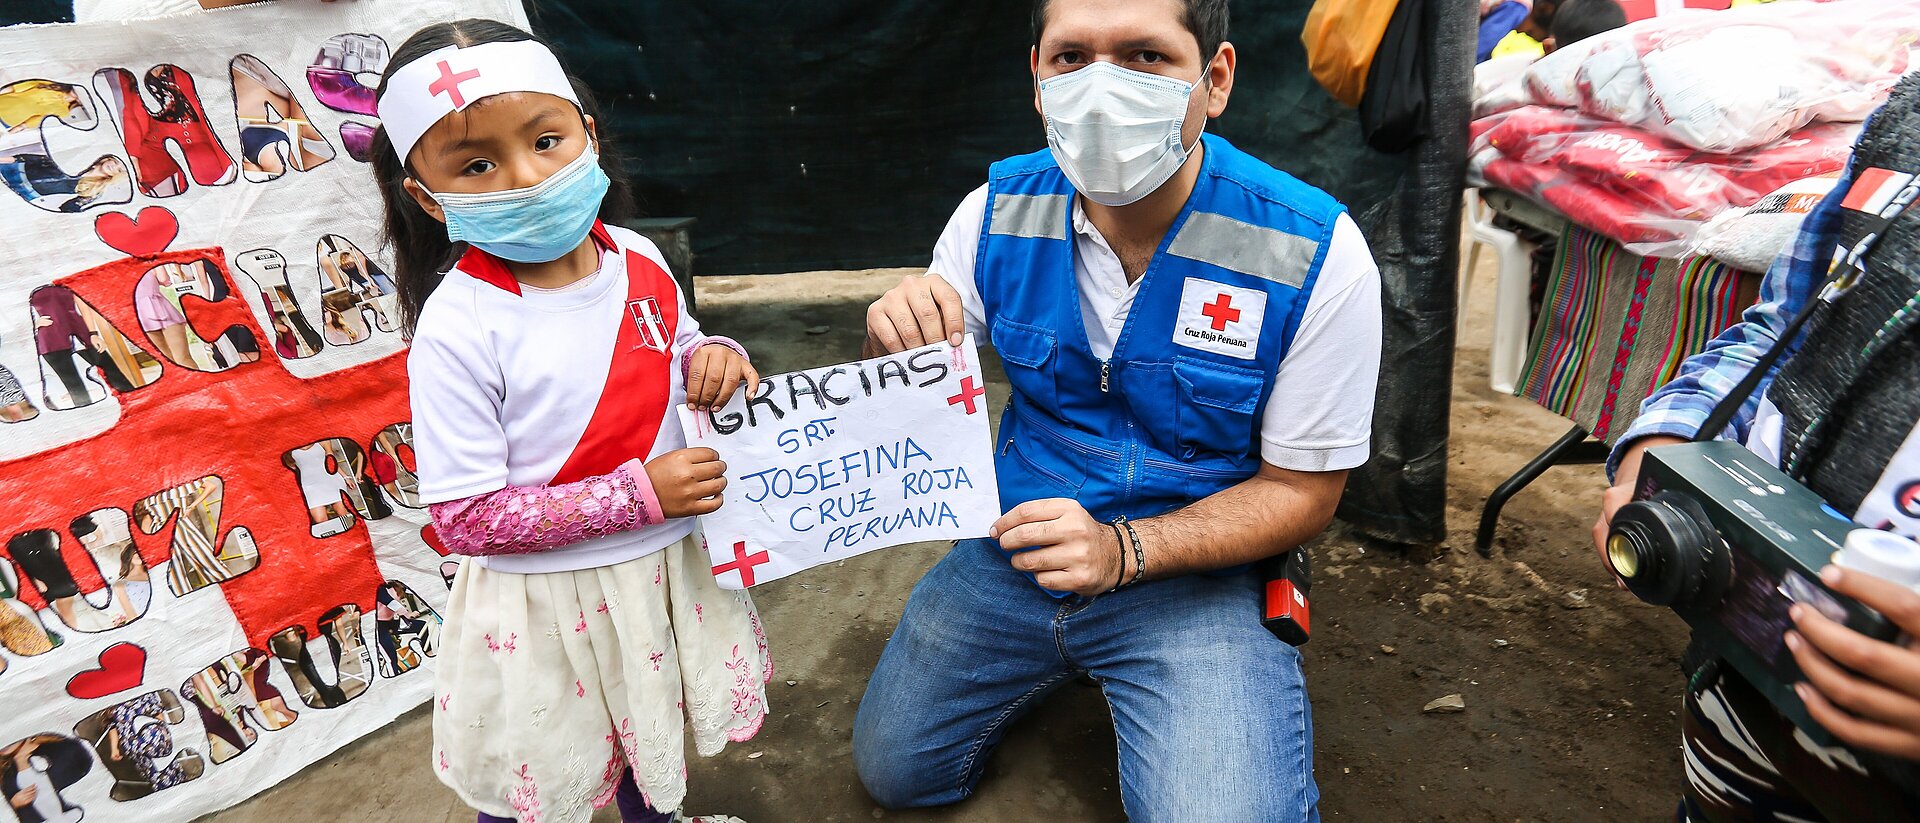 Mädchen und Rotkreuz-Helfer während der Corona-Pandemie in Peru